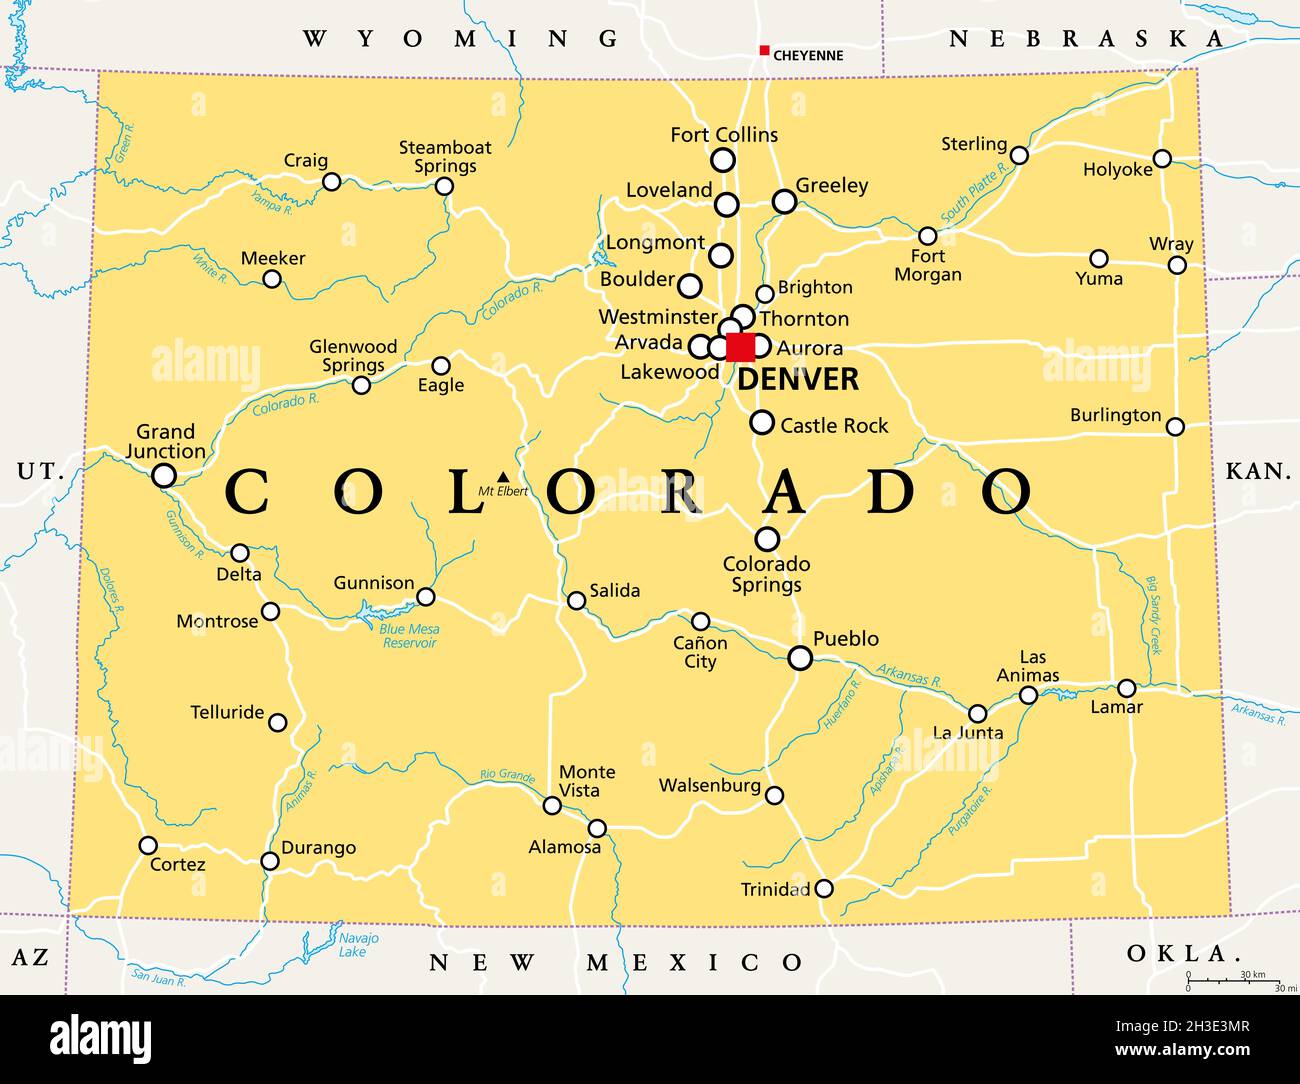 Colorado, CO politische Karte mit der Hauptstadt Denver, den wichtigsten Flüssen und Seen. Staat in der Unterregion Mountain West der westlichen Vereinigten Staaten. Stockfoto